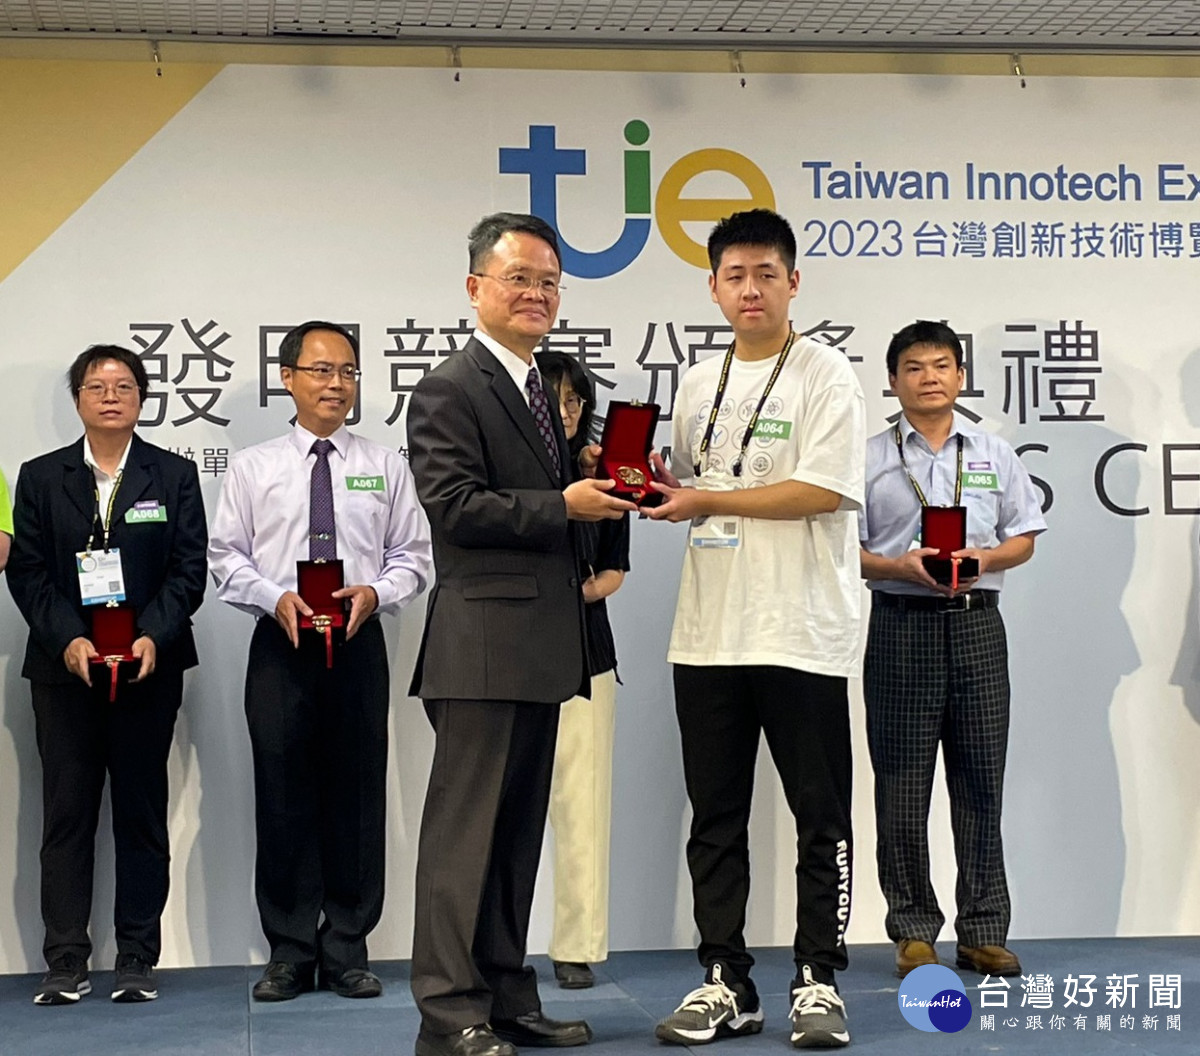 中原大學機械系丁鏞老師團隊獲得一金一銀，由學生代表領獎。